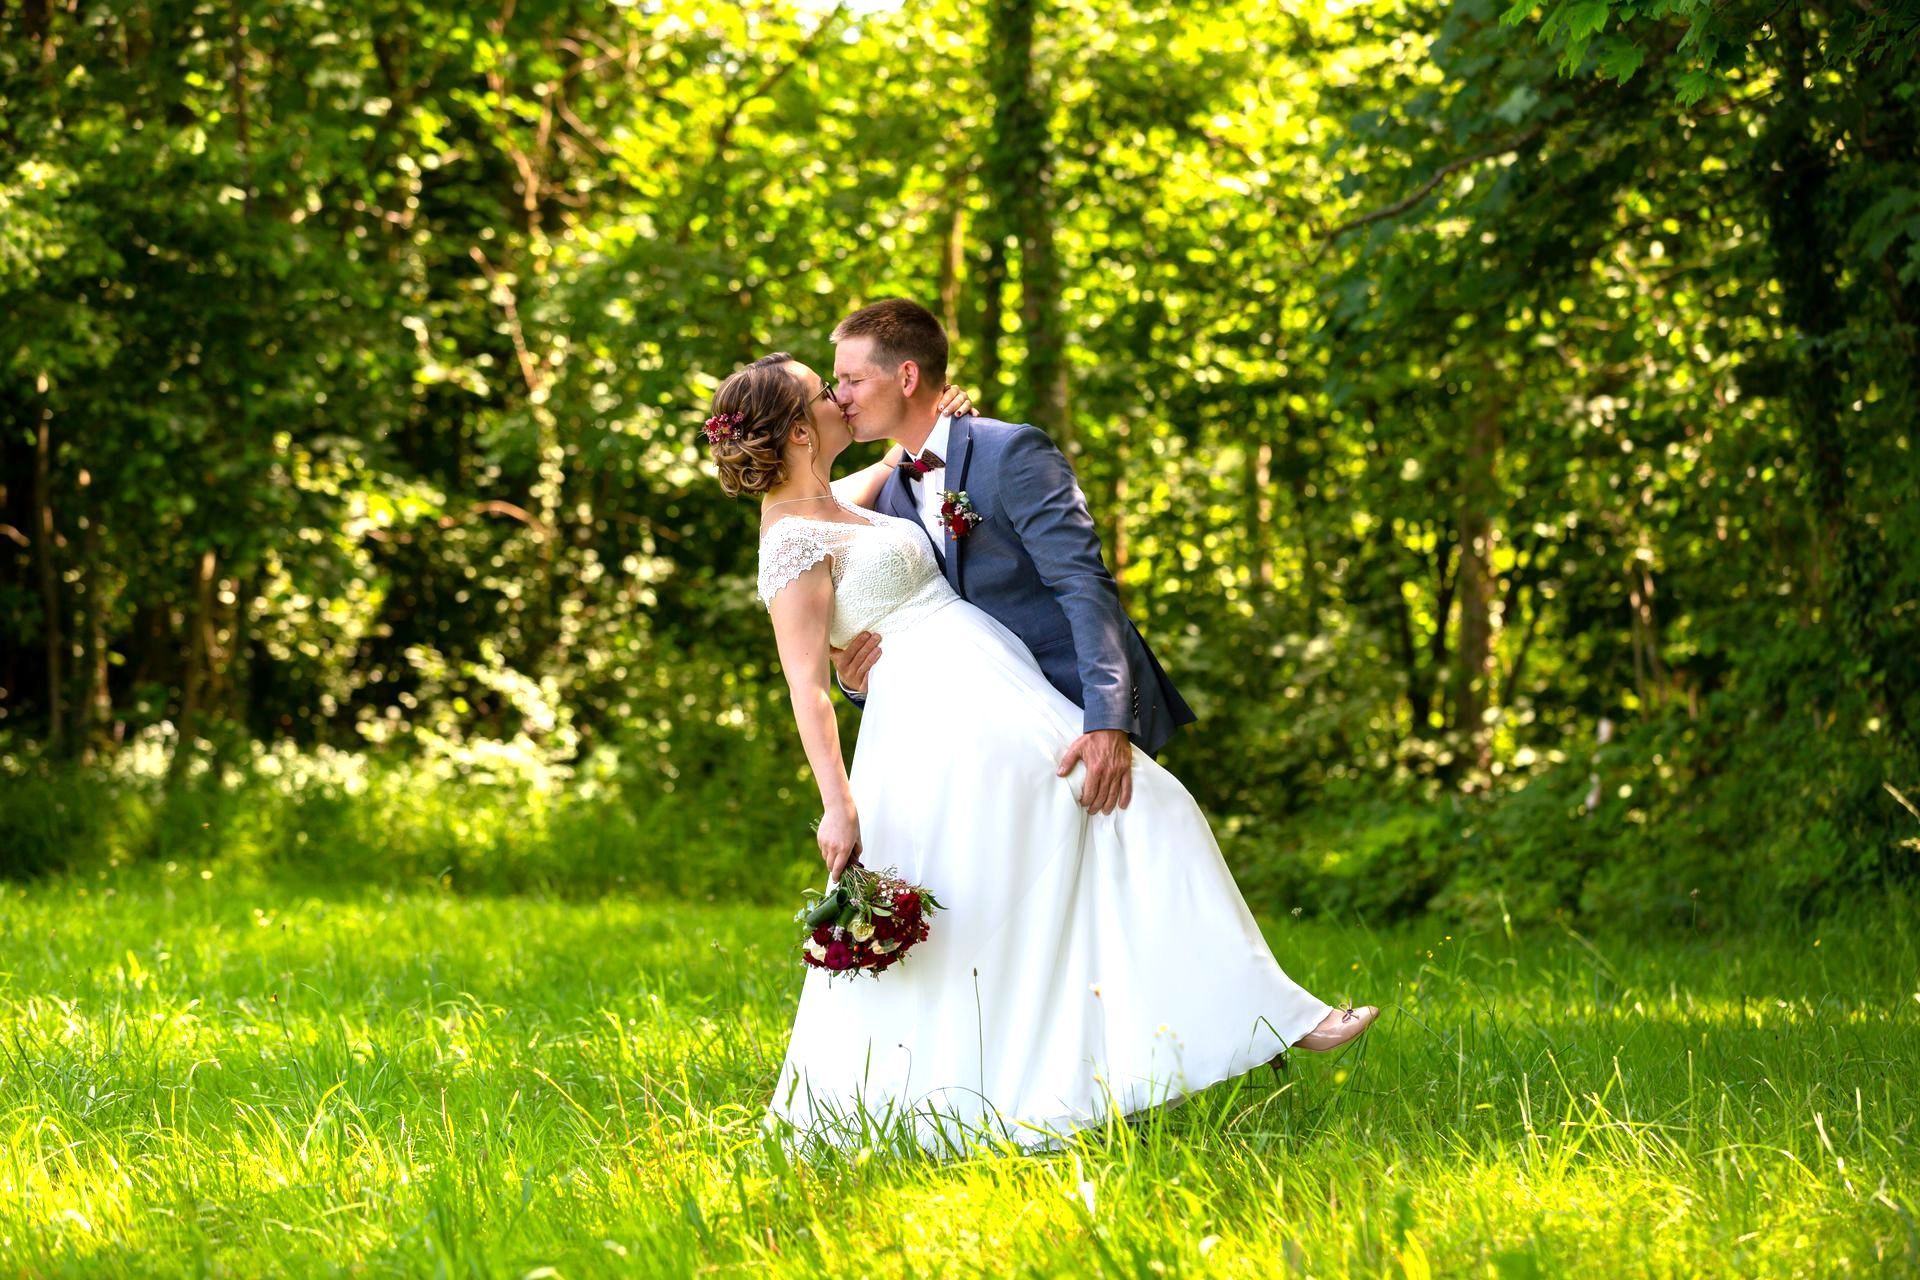 Photographe de mariage alsace - Photographe de mariage Gries - Photo de couple dans la foret - Sauvage Raphael